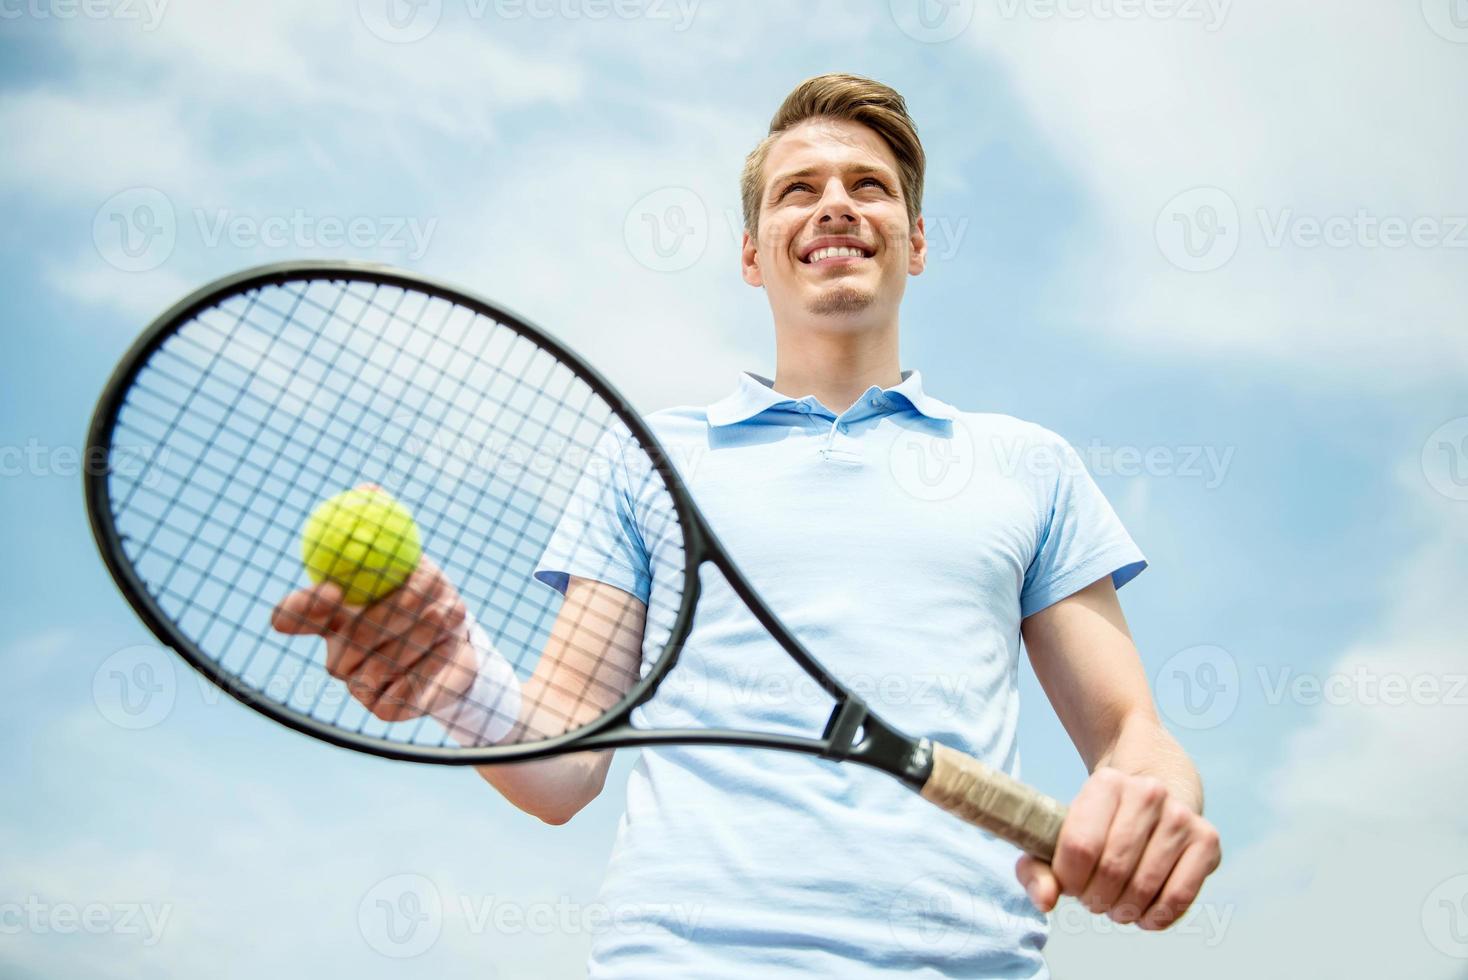 tenis foto